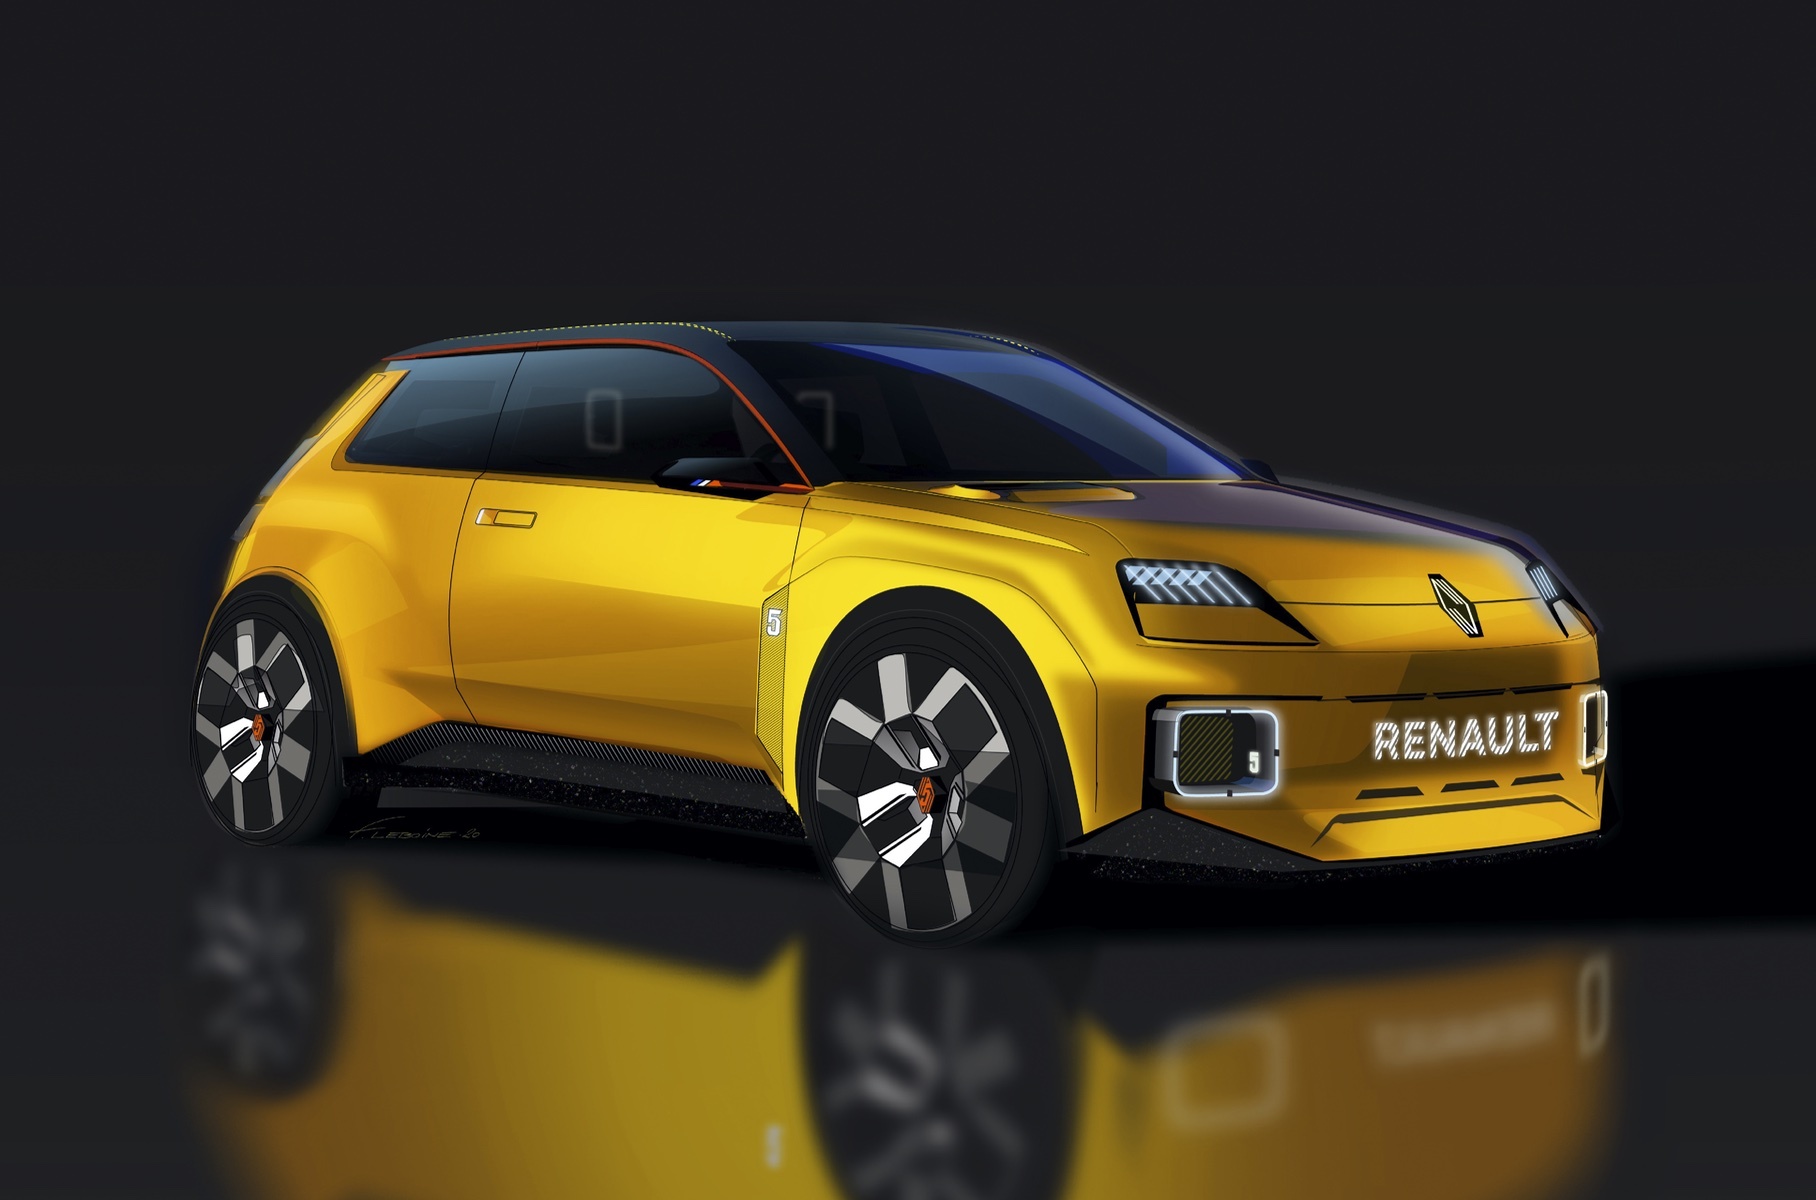 Renault привезет на автосалон в Женеве гидроцикл, сноускутер и электрофойл7